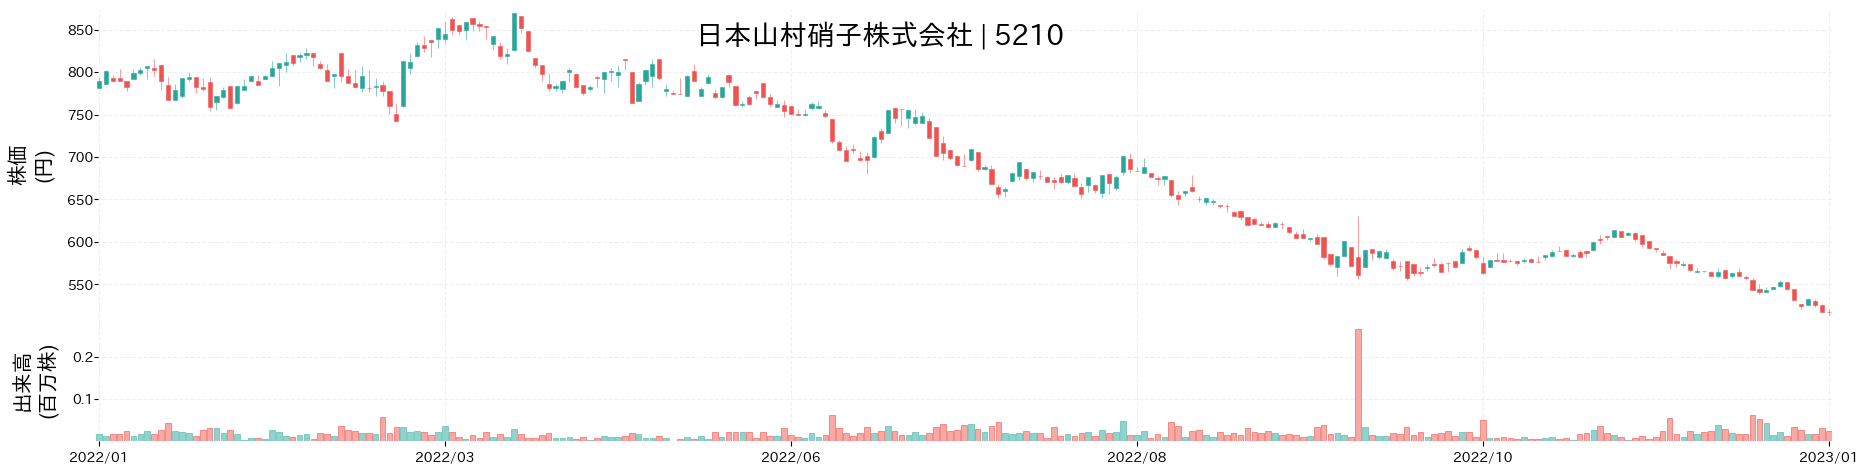 日本山村硝子の株価推移(2022)